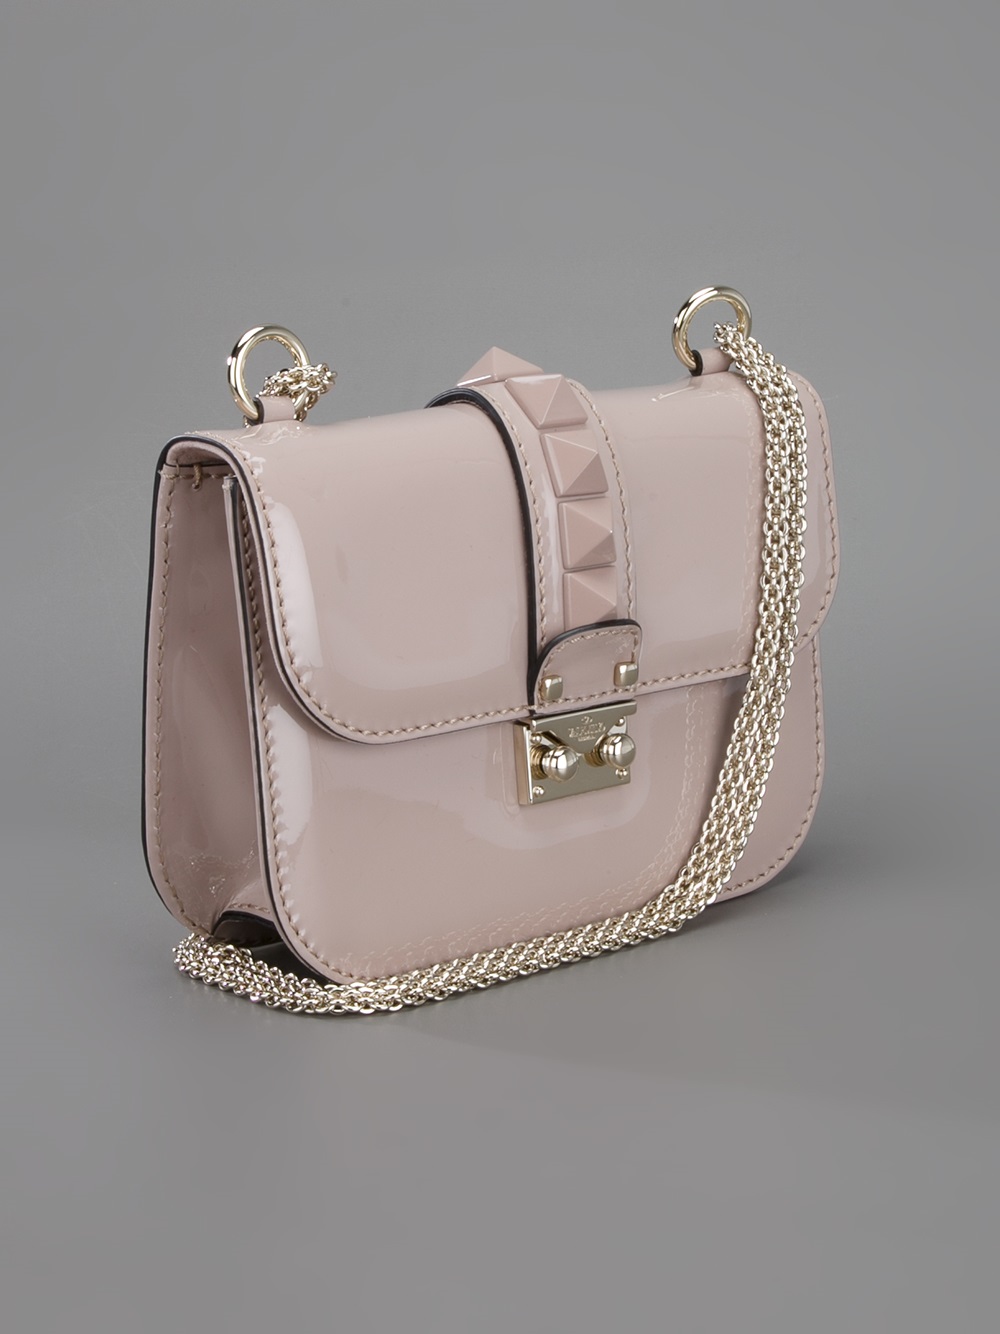 Valentino Rockstud Shoulder Bag in Pink - Lyst